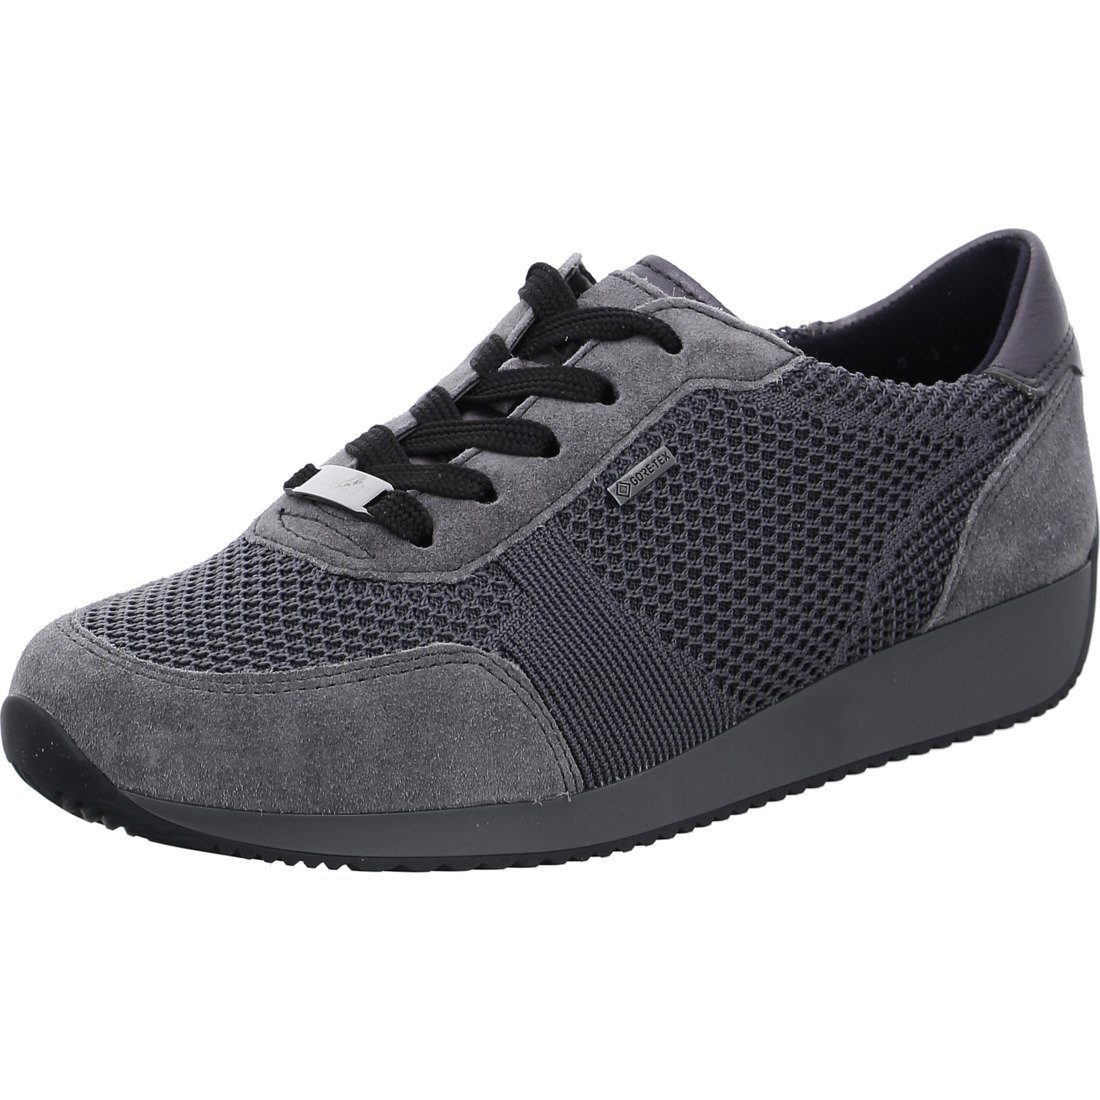 Ara Ara Schnürschuh Lissabon Materialmix 046922 Schnürschuh - grau Schuhe